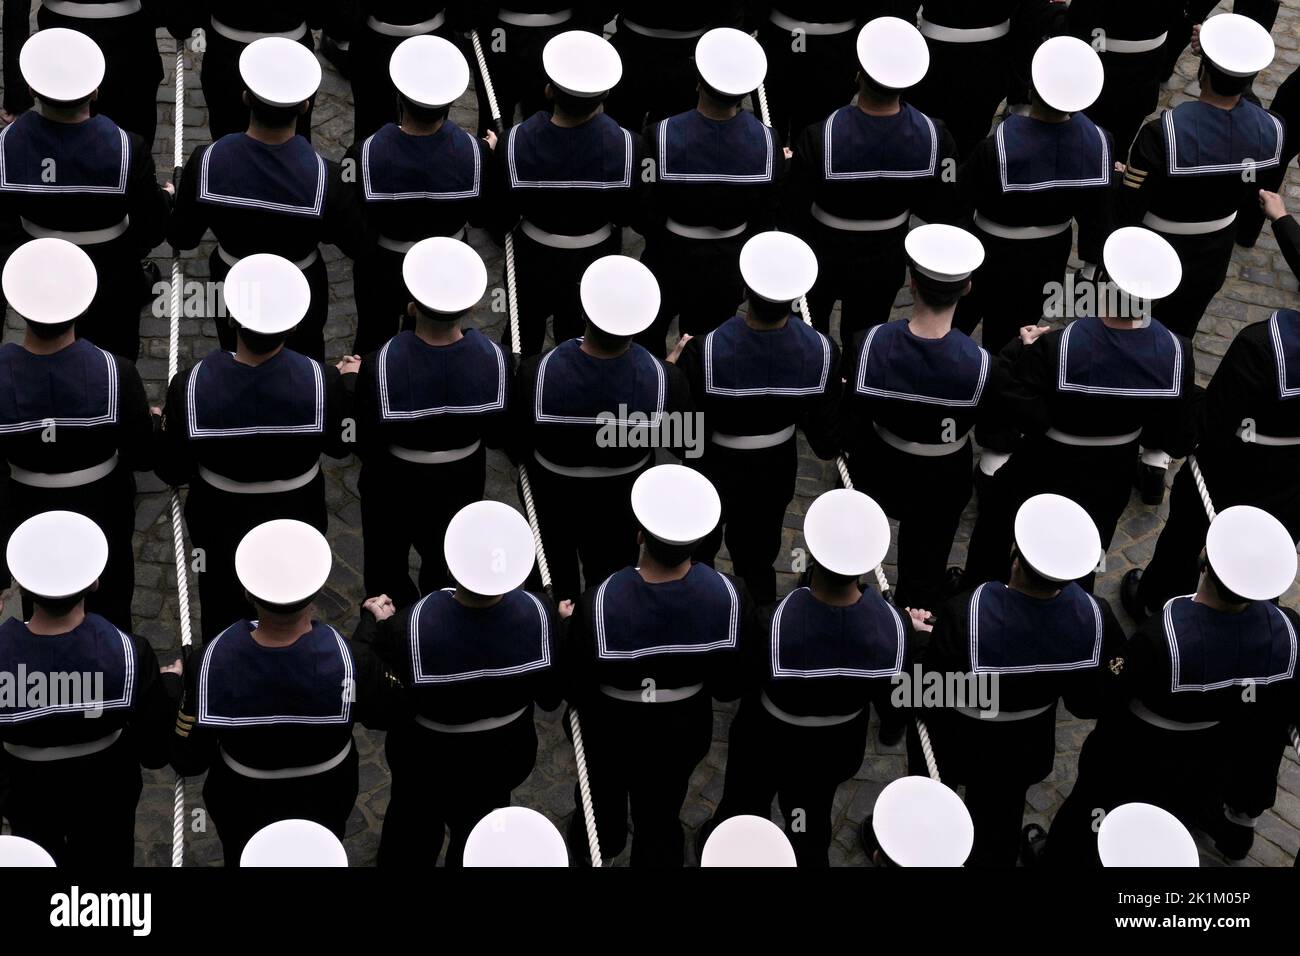 Soldaten der Royal Navy ziehen einen Waffenwagen, um den Sarg von Queen Elizabeth II von der Westminster Hall zum State Funeral zu bringen, das in Westminster Abbey, London, stattfindet. Bilddatum: Montag, 19. September 2022. Stockfoto